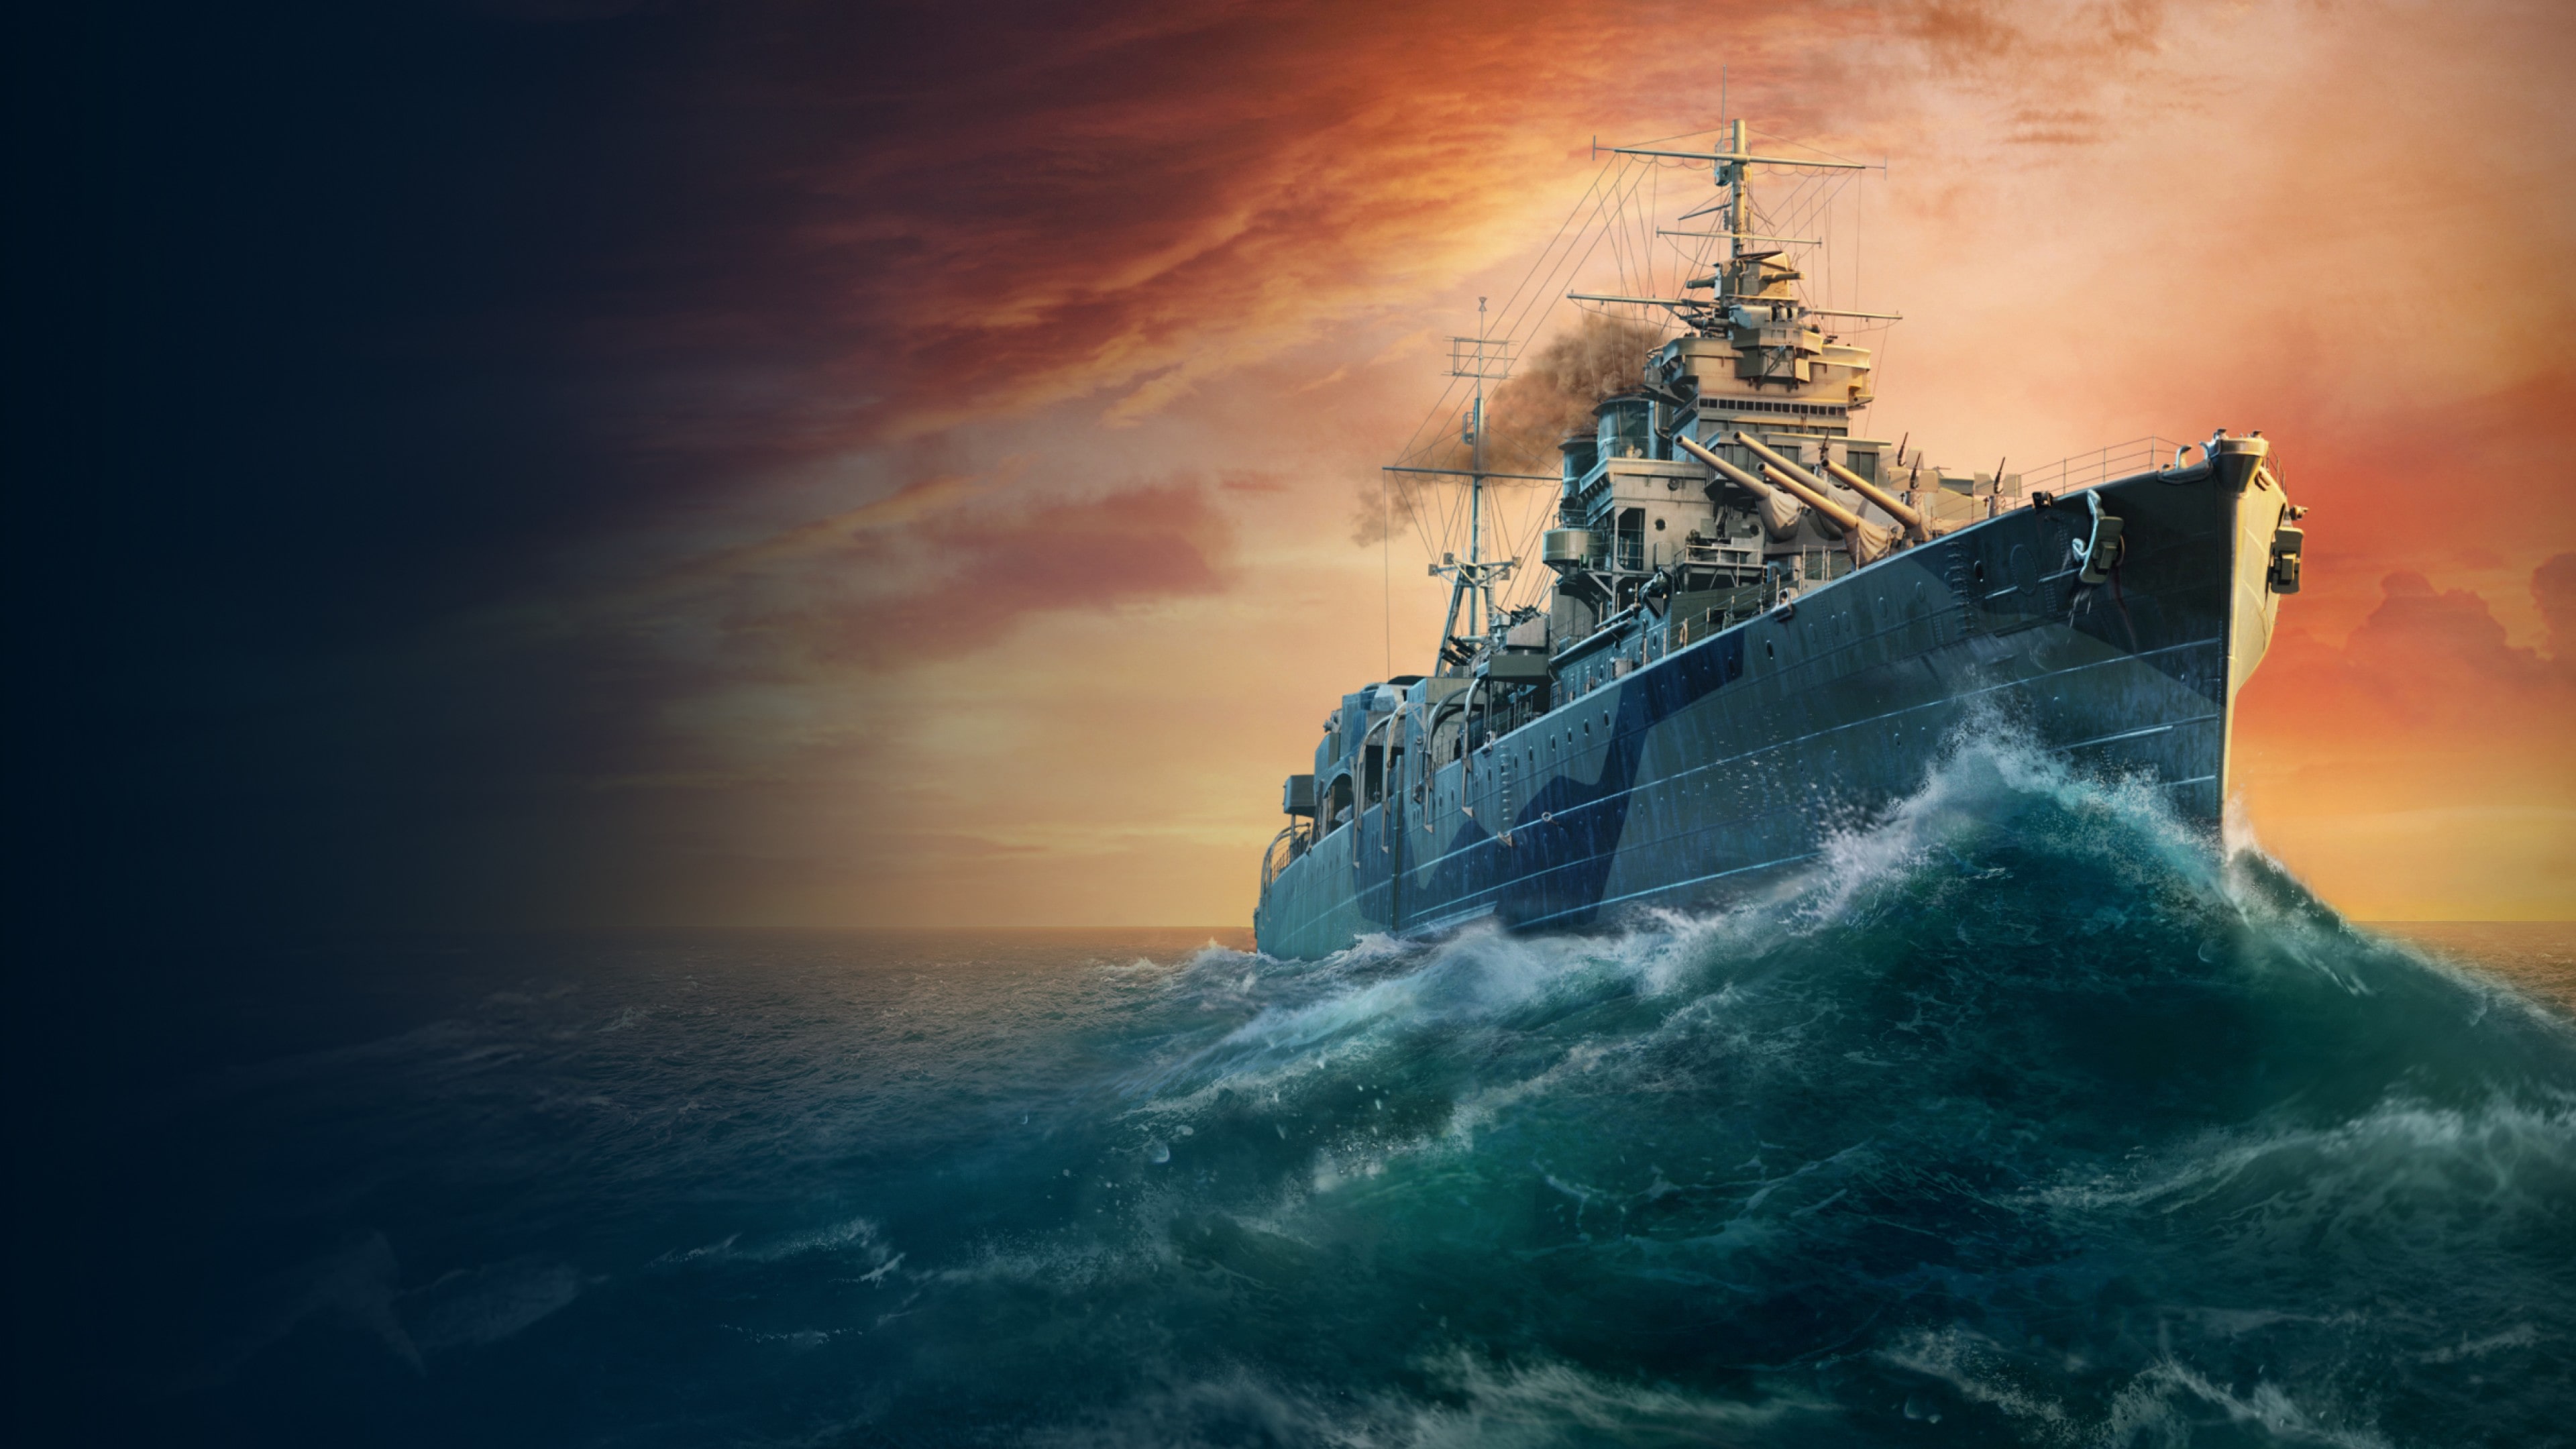 Eer van de commandant — PS5® World of Warships: Legends